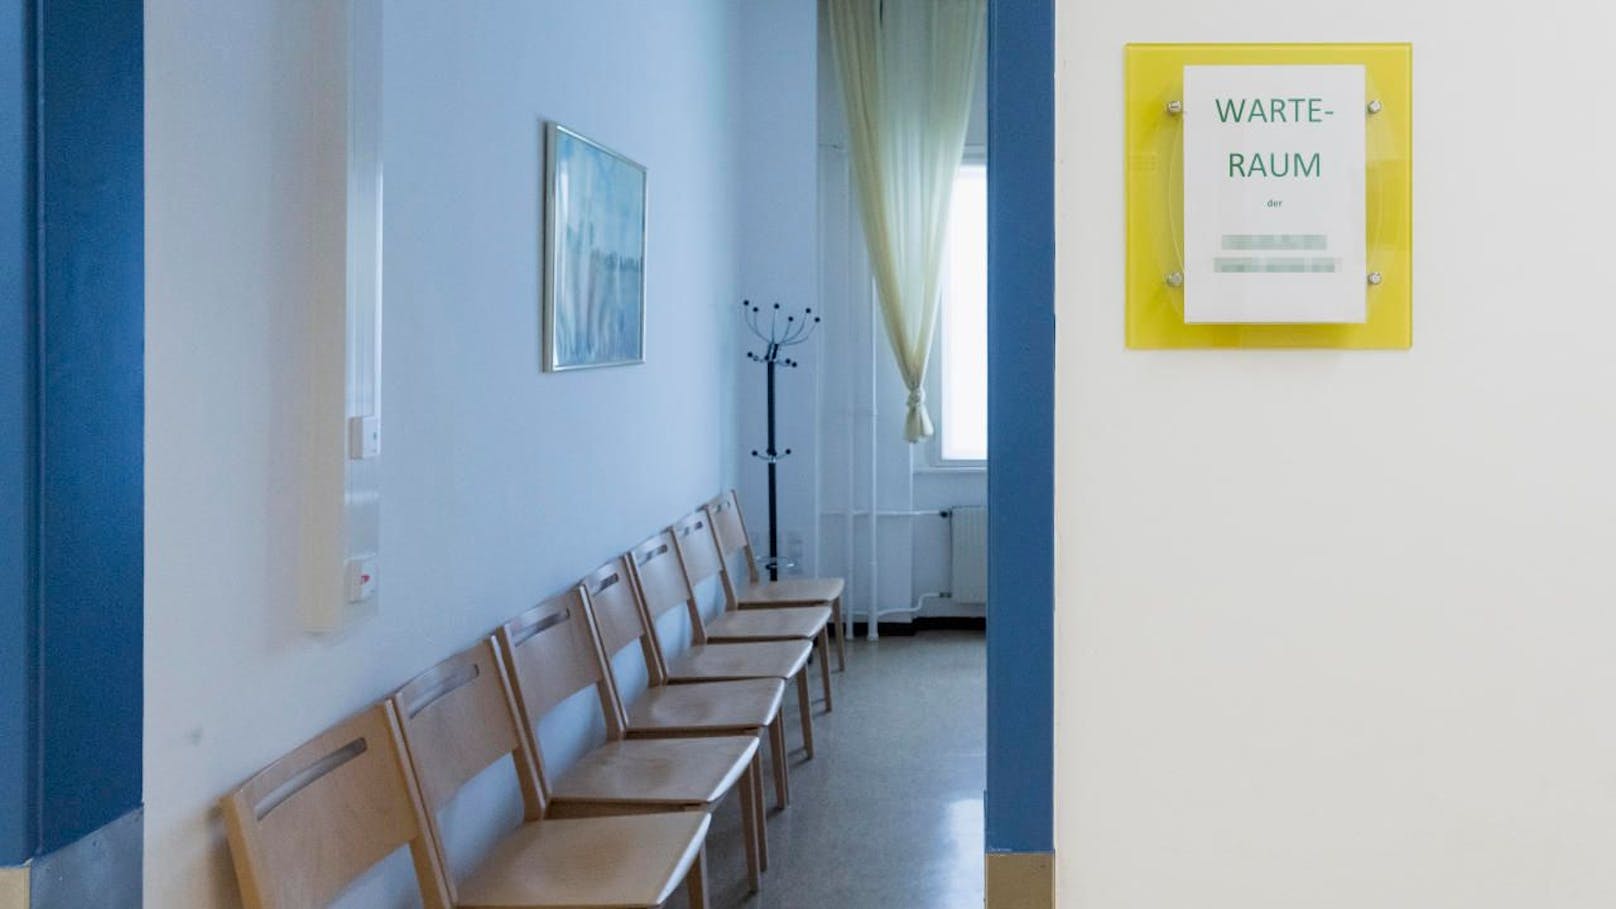 Im Wartezimmer einer Arzt-Ordination geriet ein Streit von mehreren Frauen völlig außer Kontrolle.